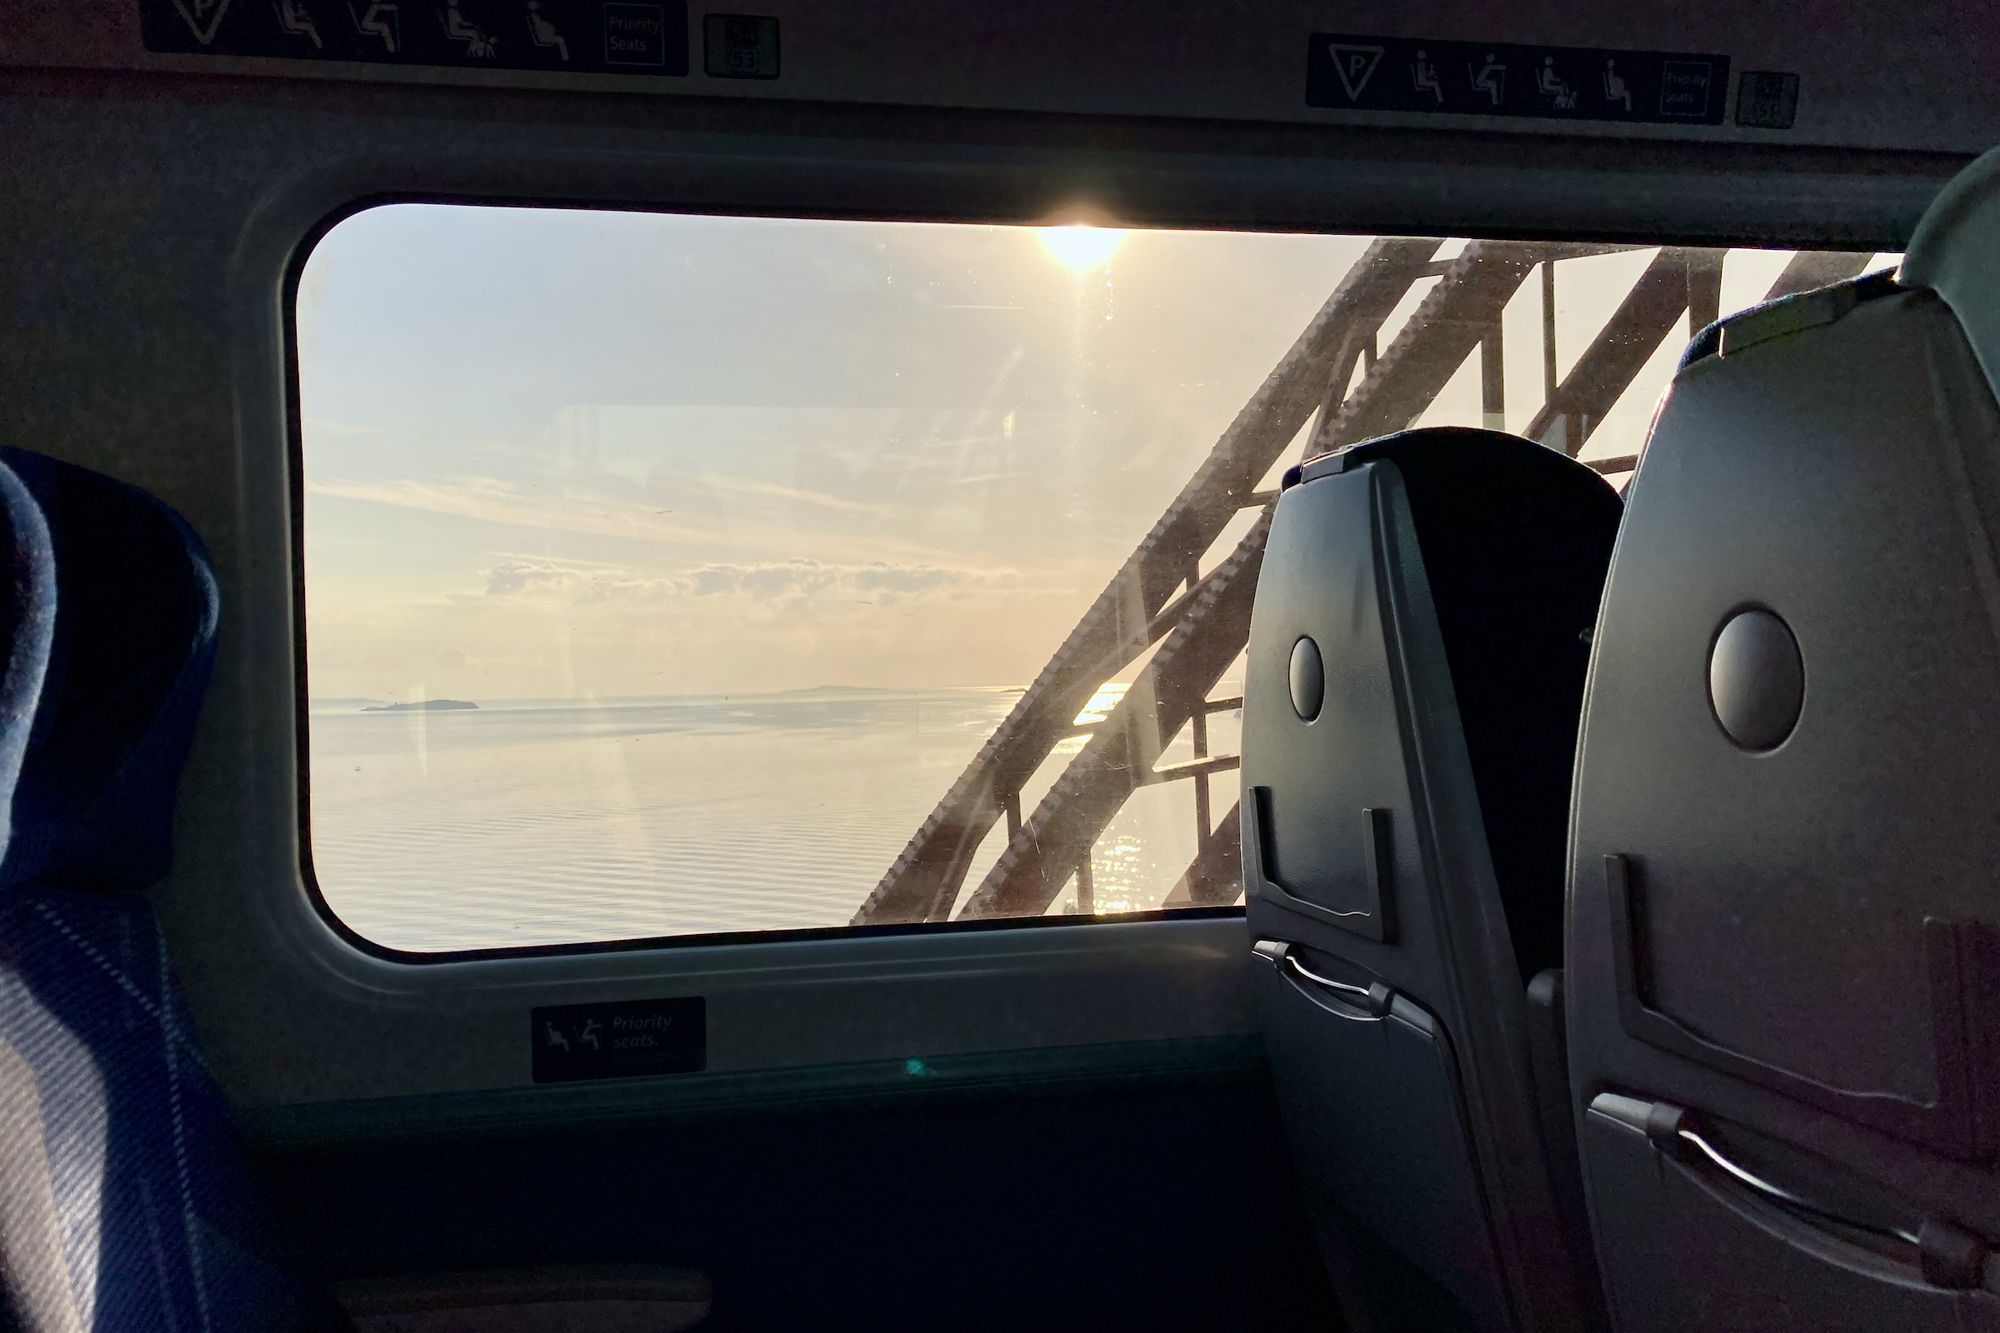 Bild: Aussicht aus dem Zugfenster auf Meer mit einem Brückenpfeiler